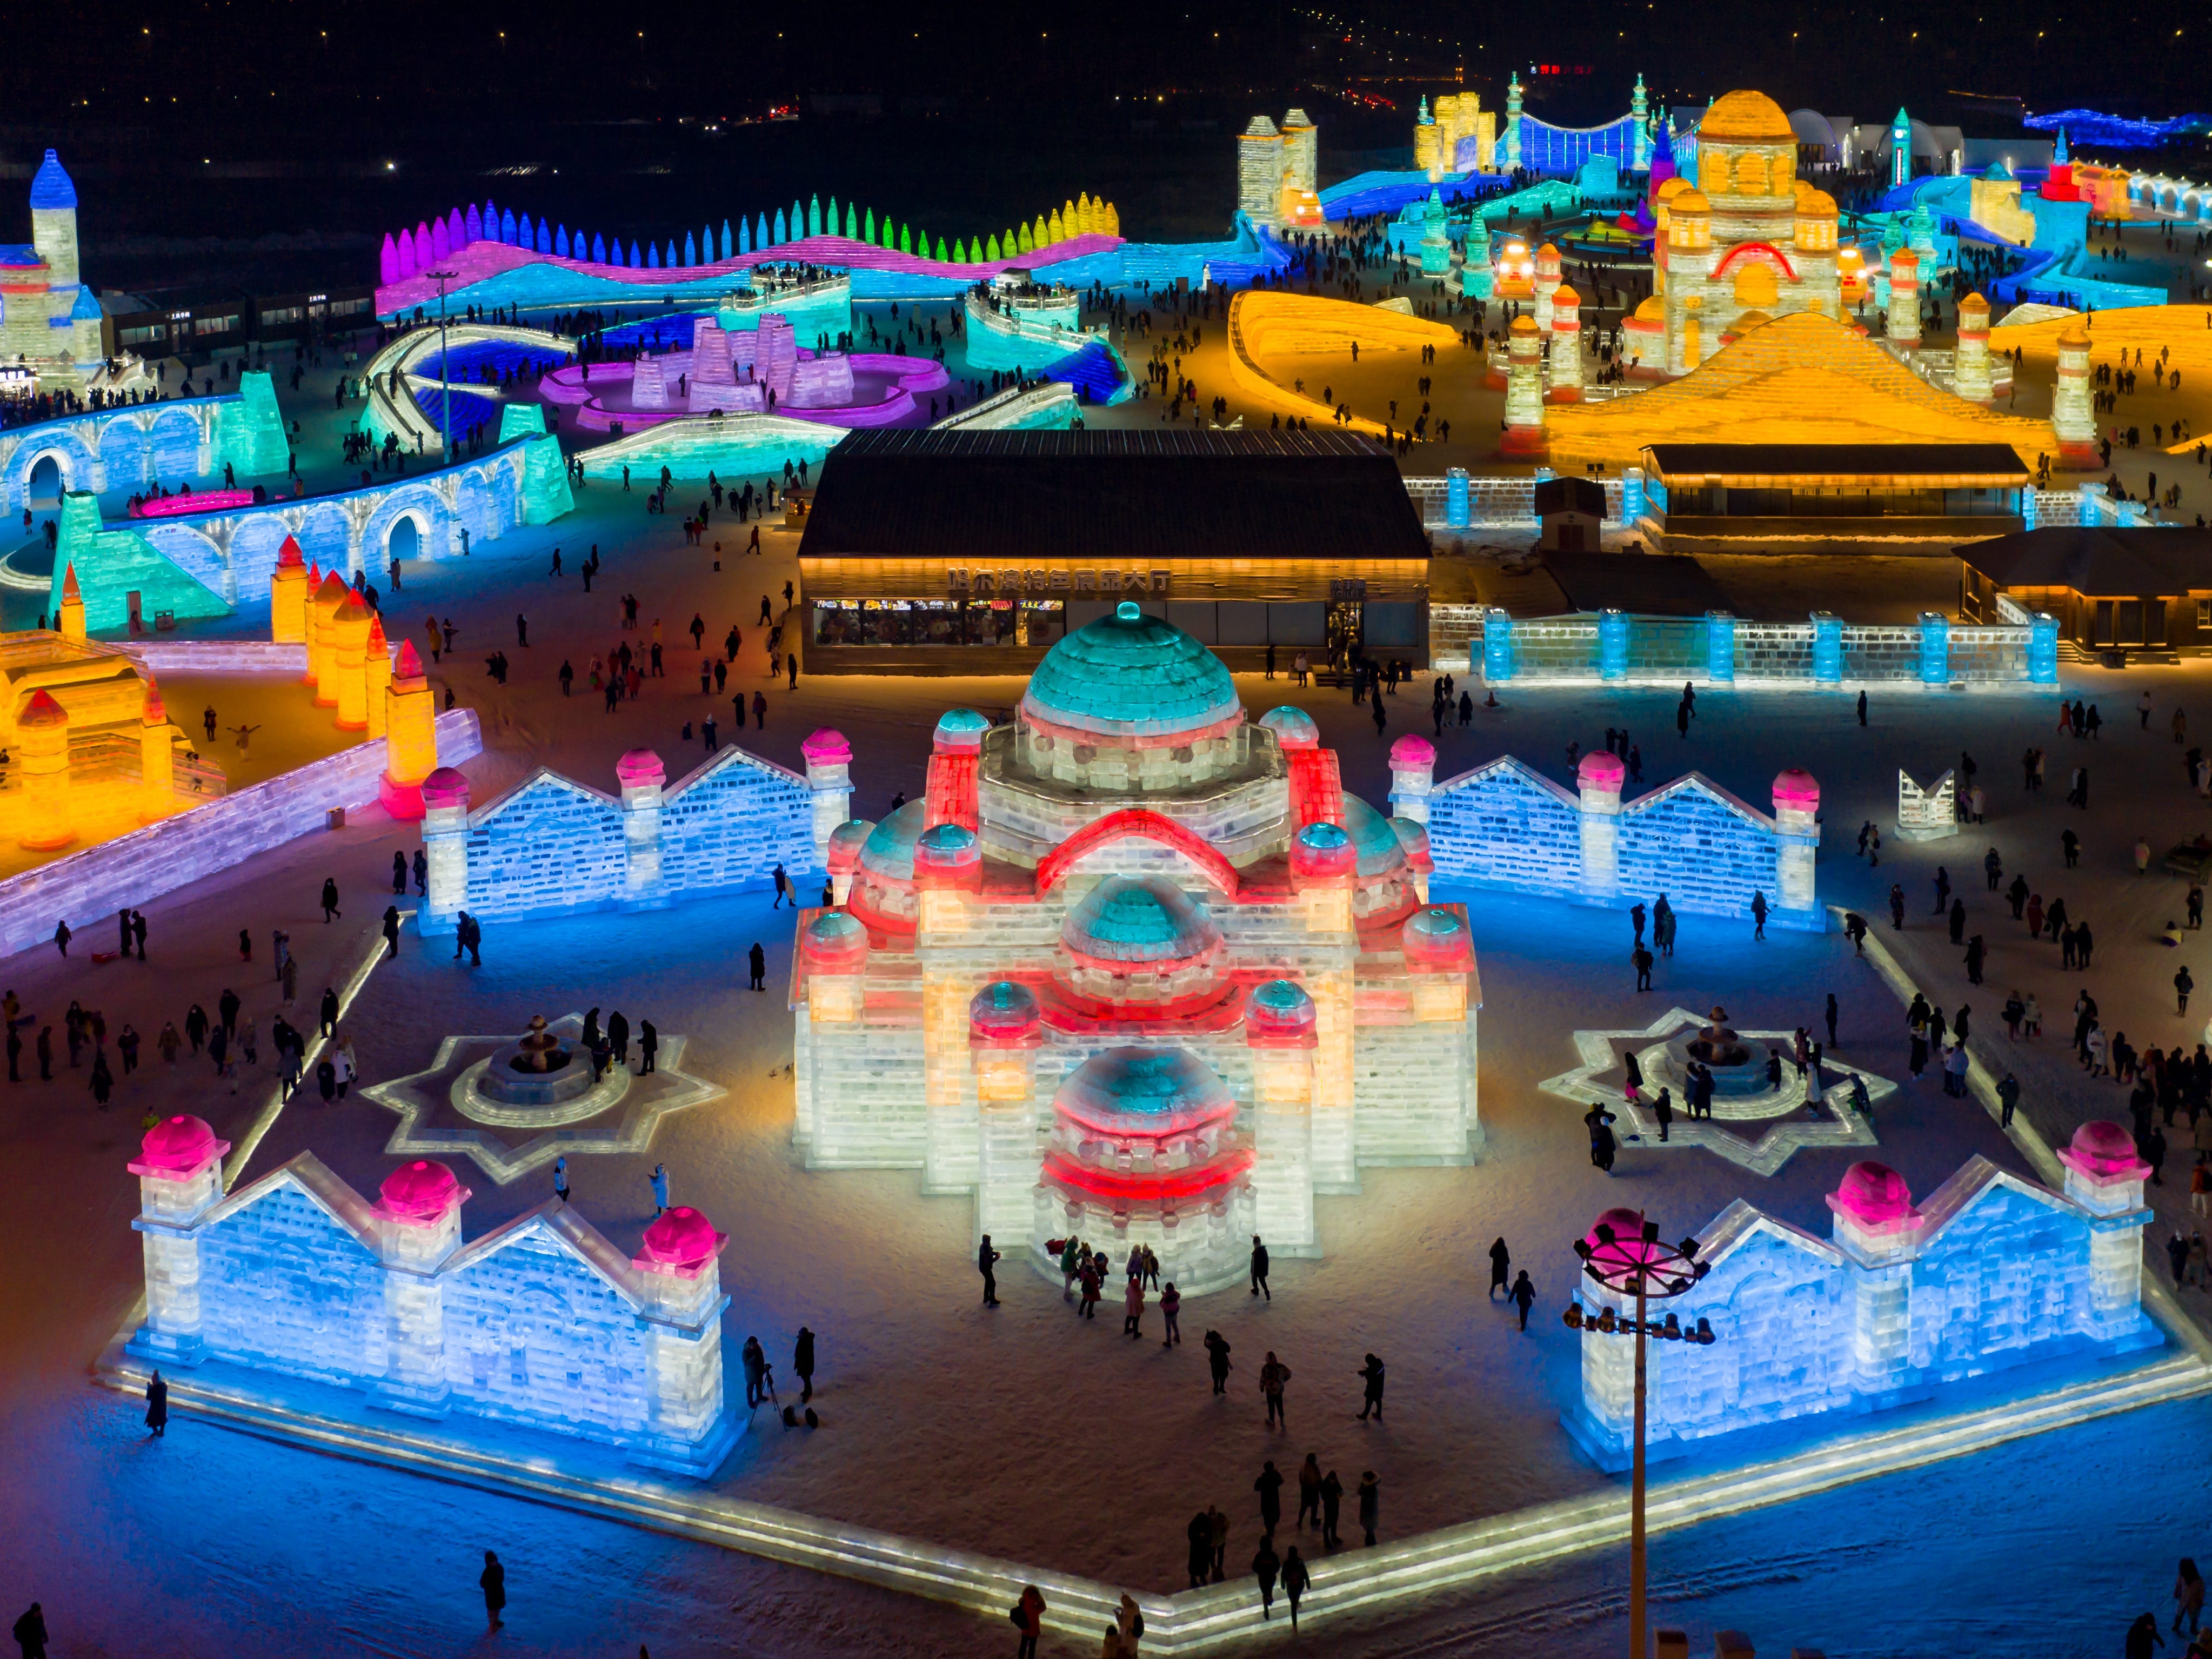 Dezember 2020 aufgenommene Luftbild zeigt Touristen, die die Welt aus Eis und Schnee in Harbin, Provinz Heilongjiang, China, besuchen.